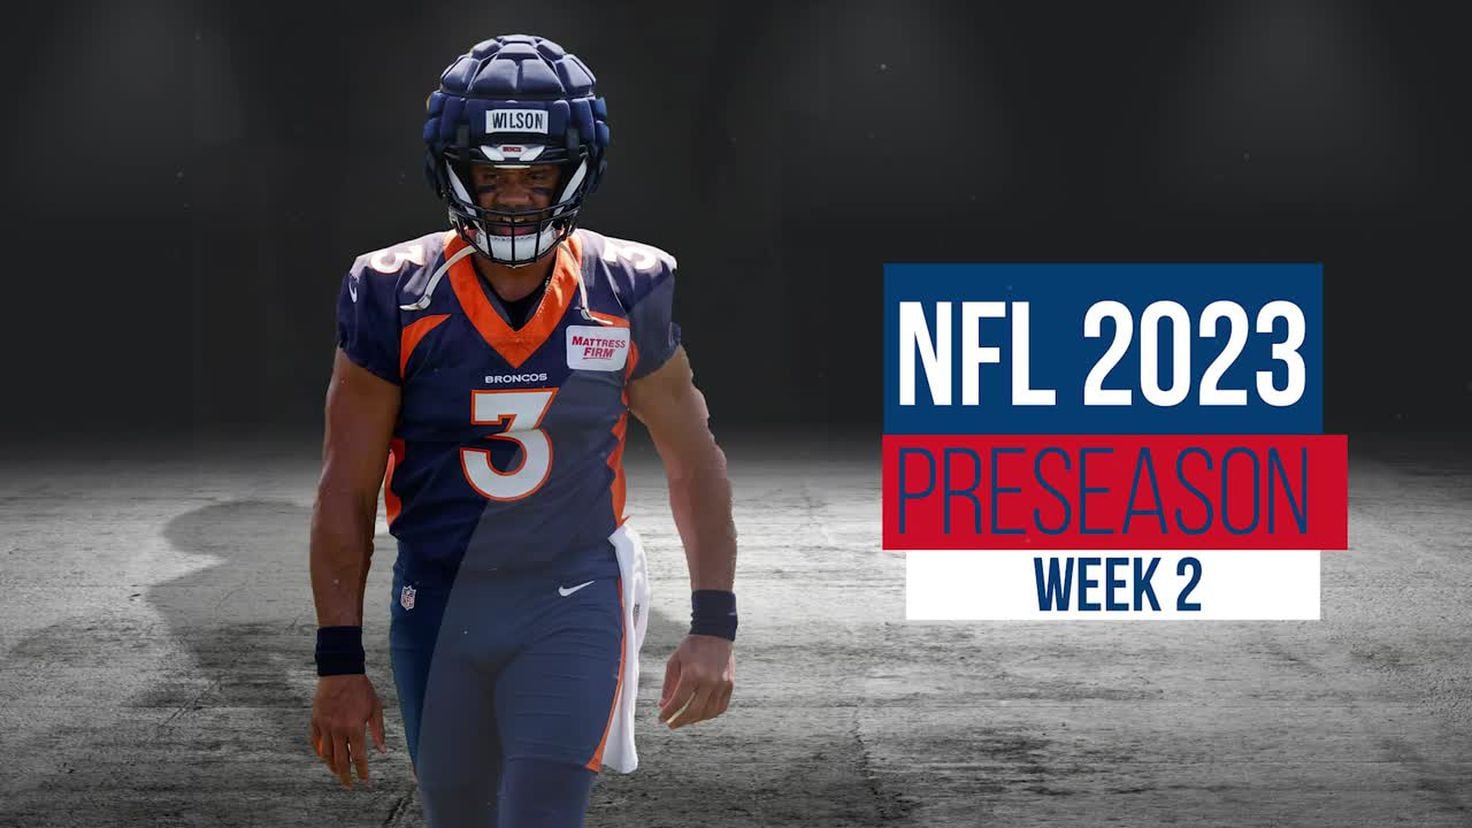 NFL preseason schedule for this week